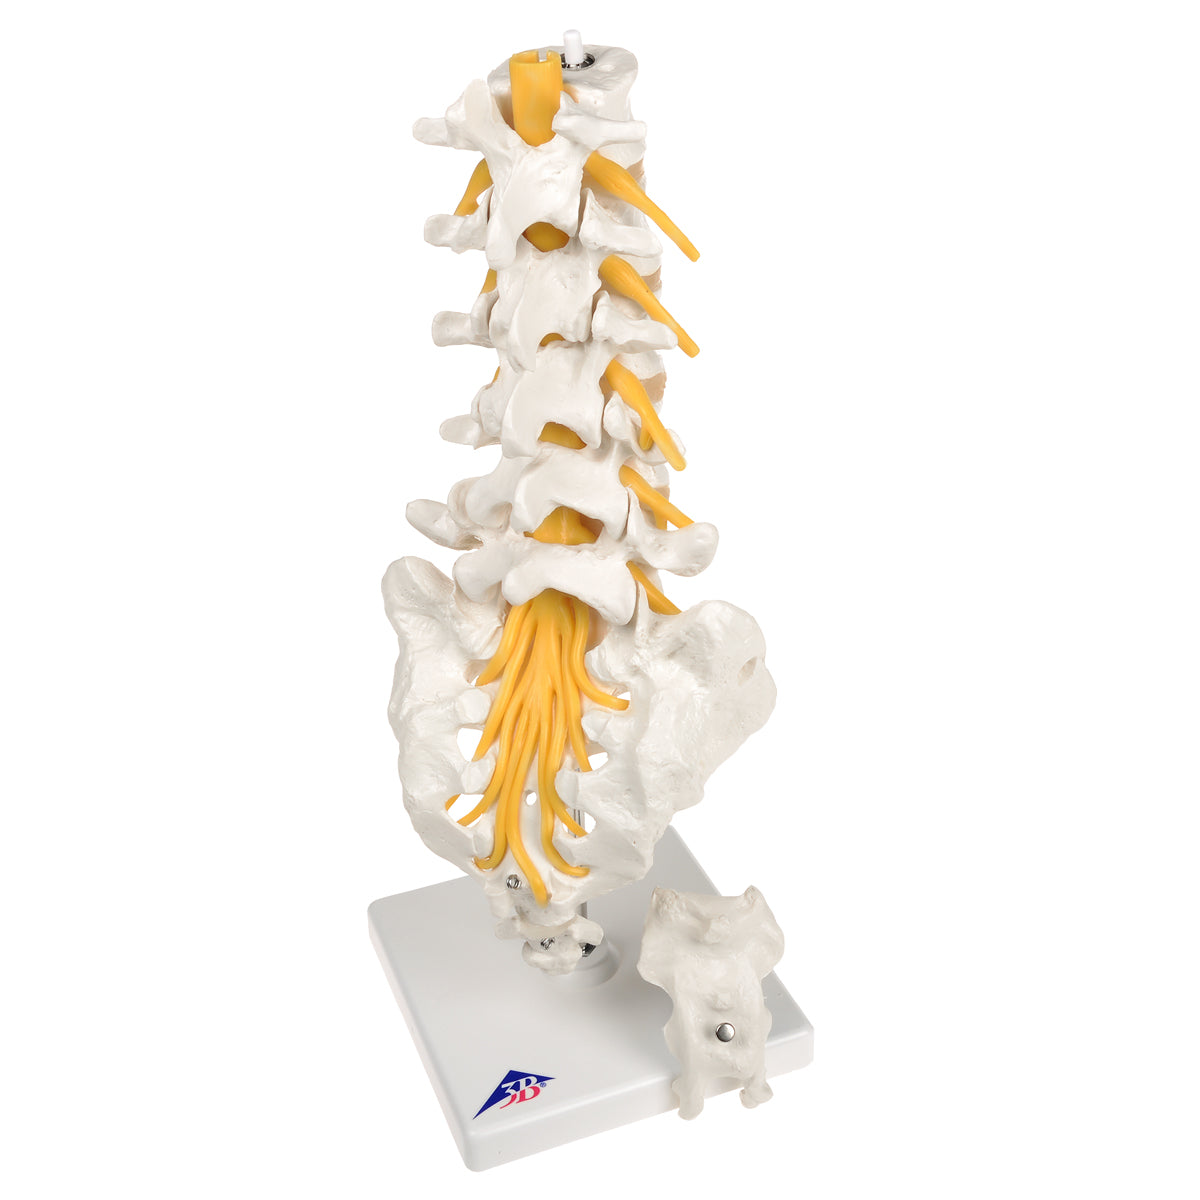 Flexibel modell av nedre delen av ryggen, korsbenet och coccyx med nerver